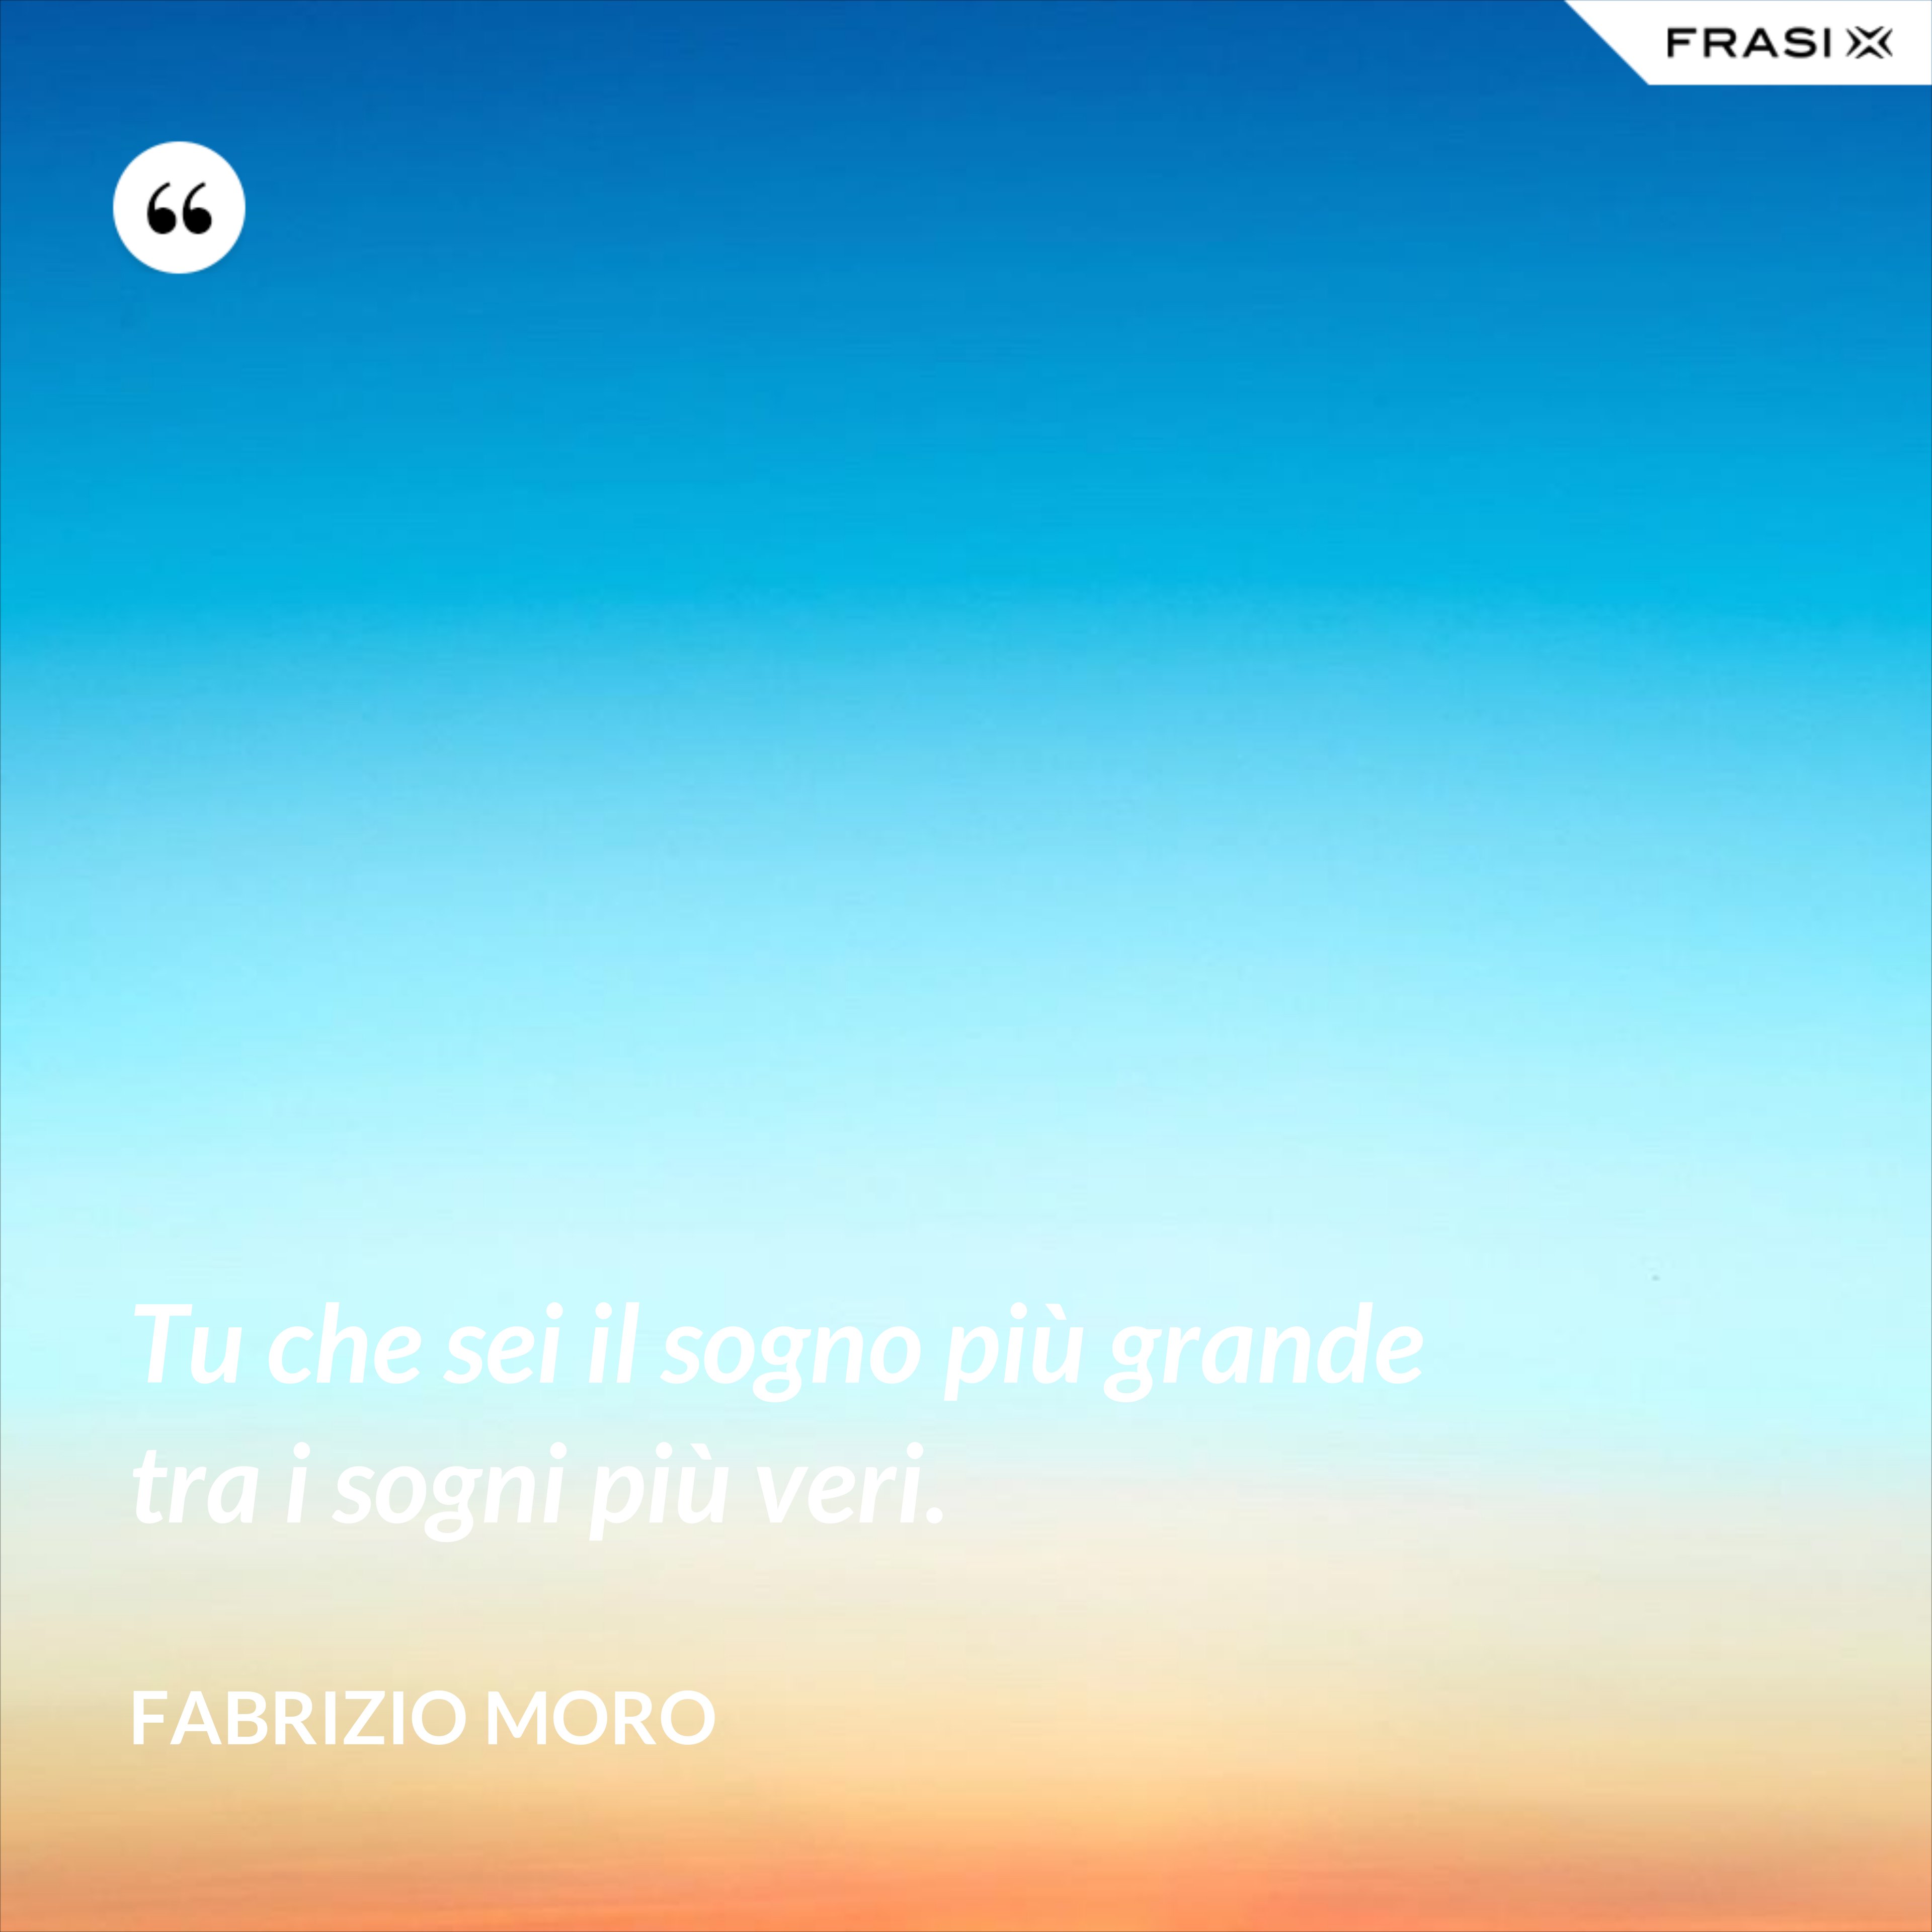 Tu che sei il sogno più grande tra i sogni più veri. - Fabrizio Moro